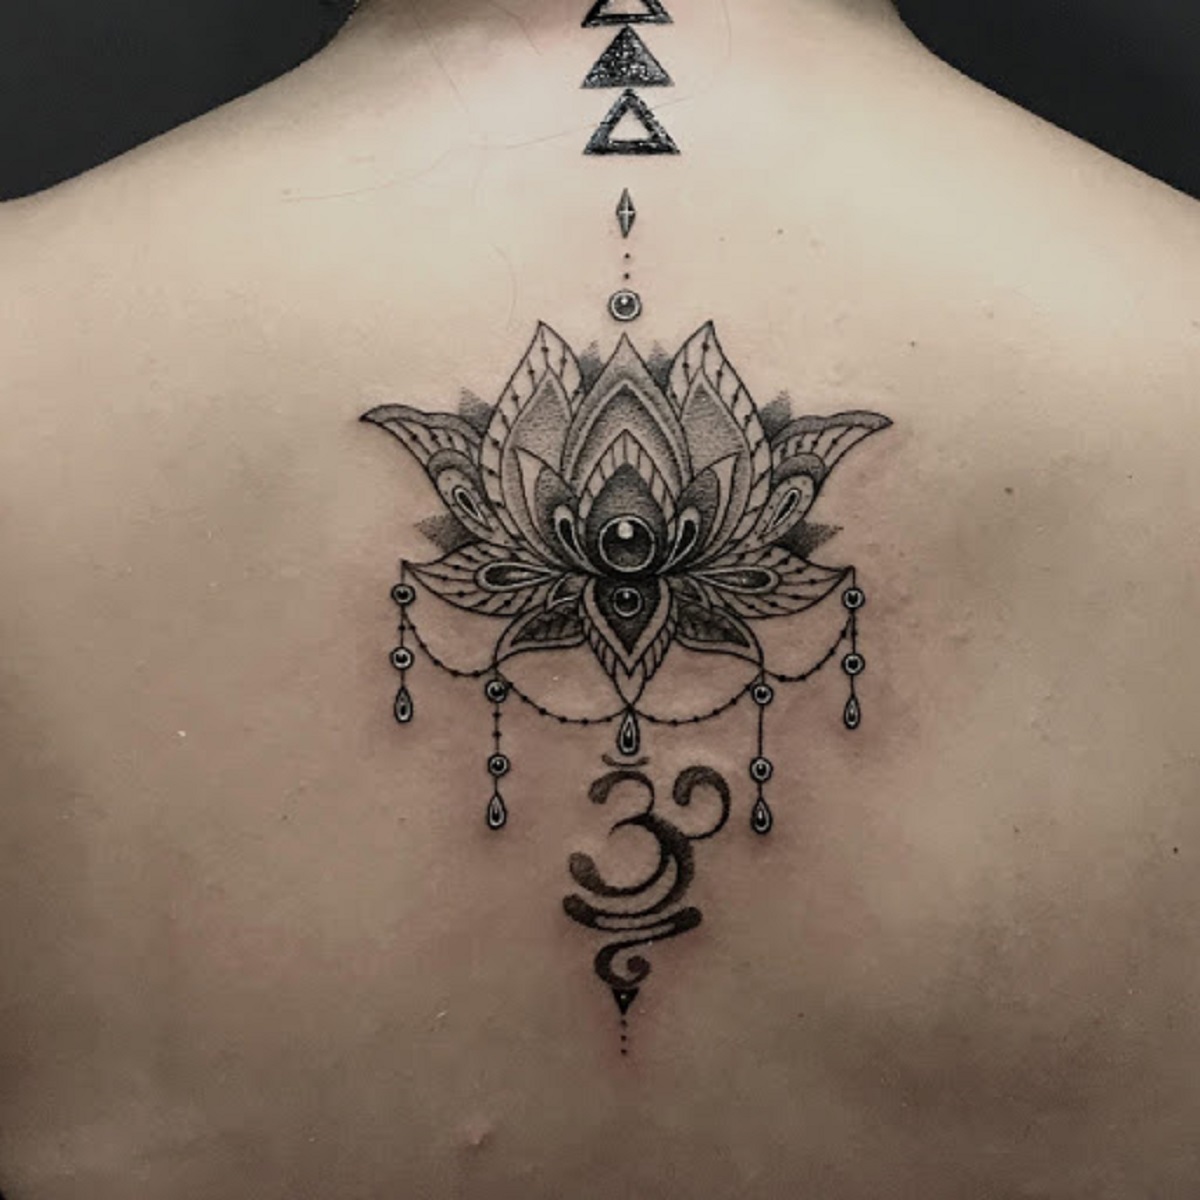 Tattoo Thuỷ Mộc - Mandala tattoo Hình xăm được thực hiện tại tattoo Thuỷ  Mộc Vừa che được sẹo lại vừa đẹp Các bạn nữ có thích như này không ạhh  #StudioThủyMộcTattoo #